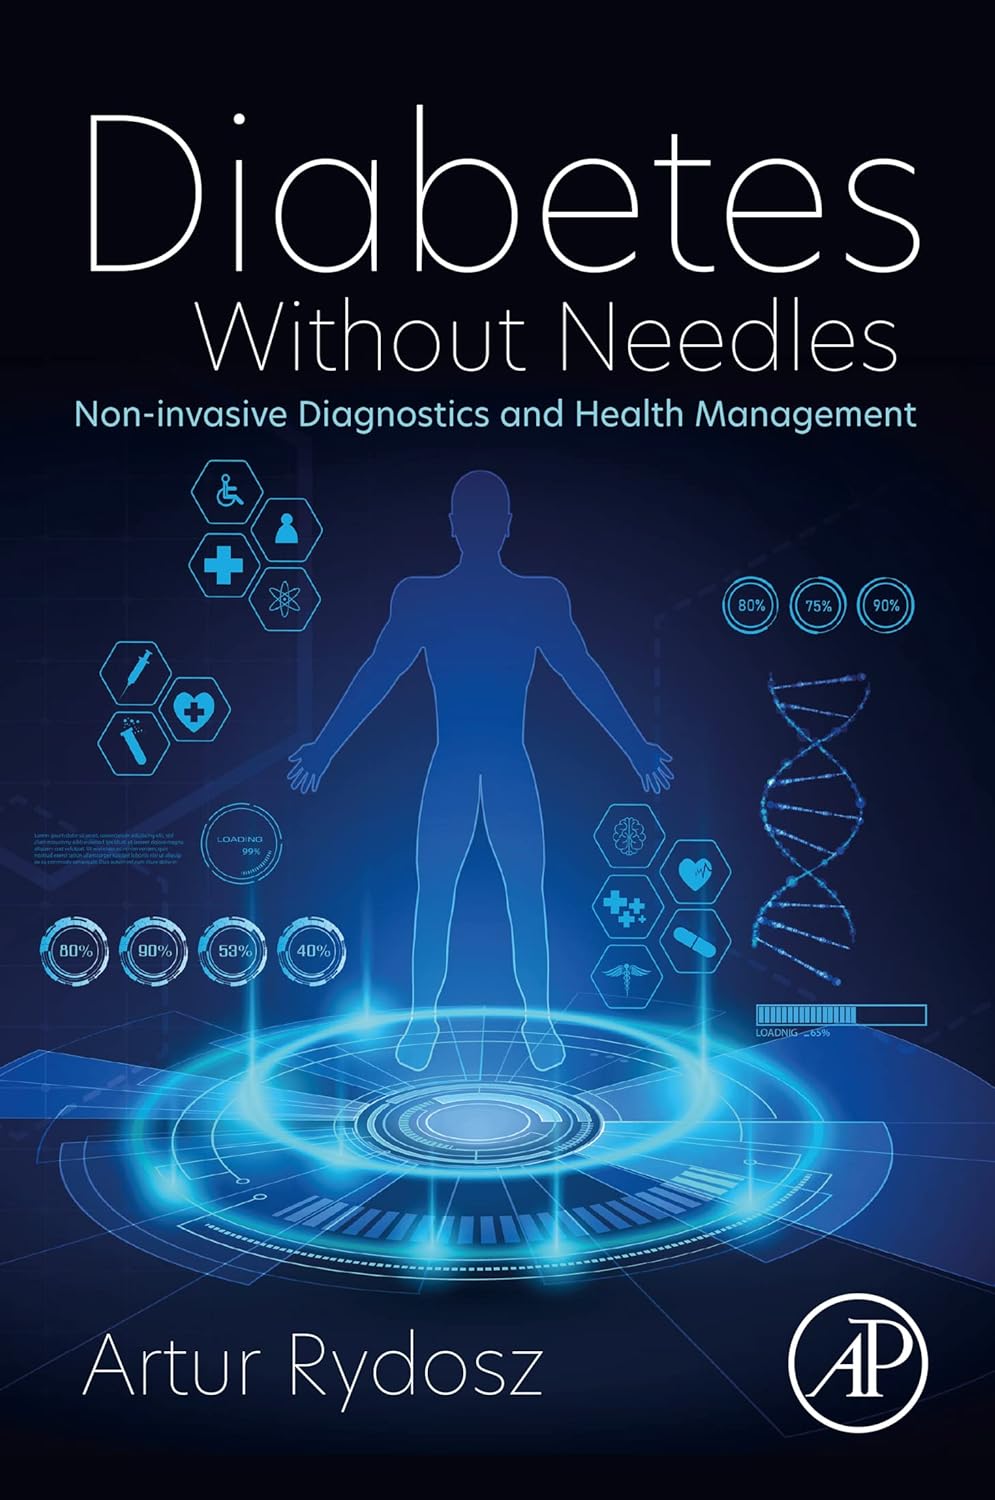 Diabetes Without Needles: Non-invasive Diagnostics and Health Management by Artur Rydosz